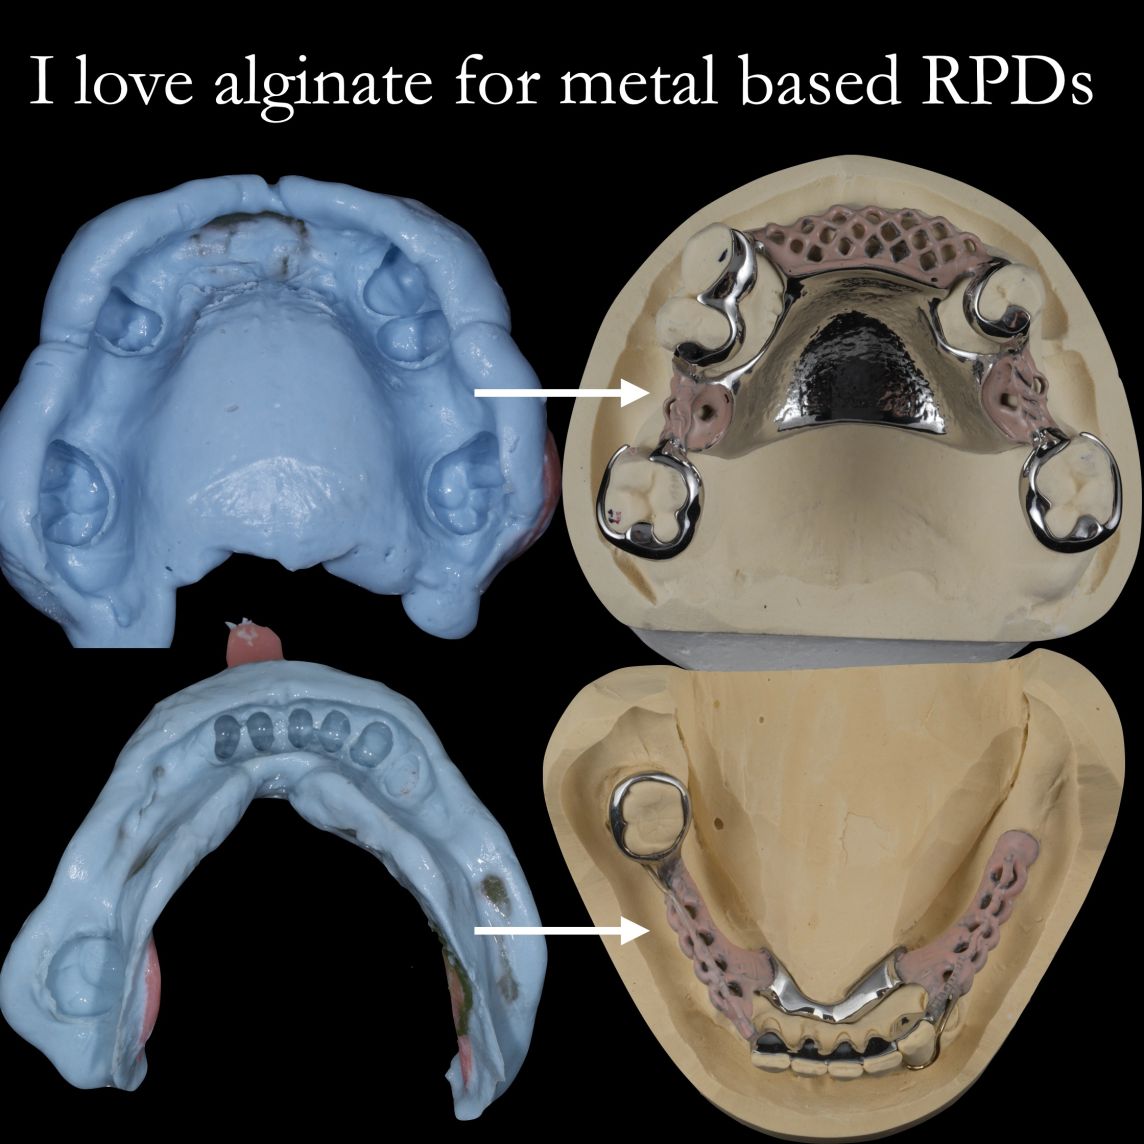 Alginate impression material for metal-based dentures